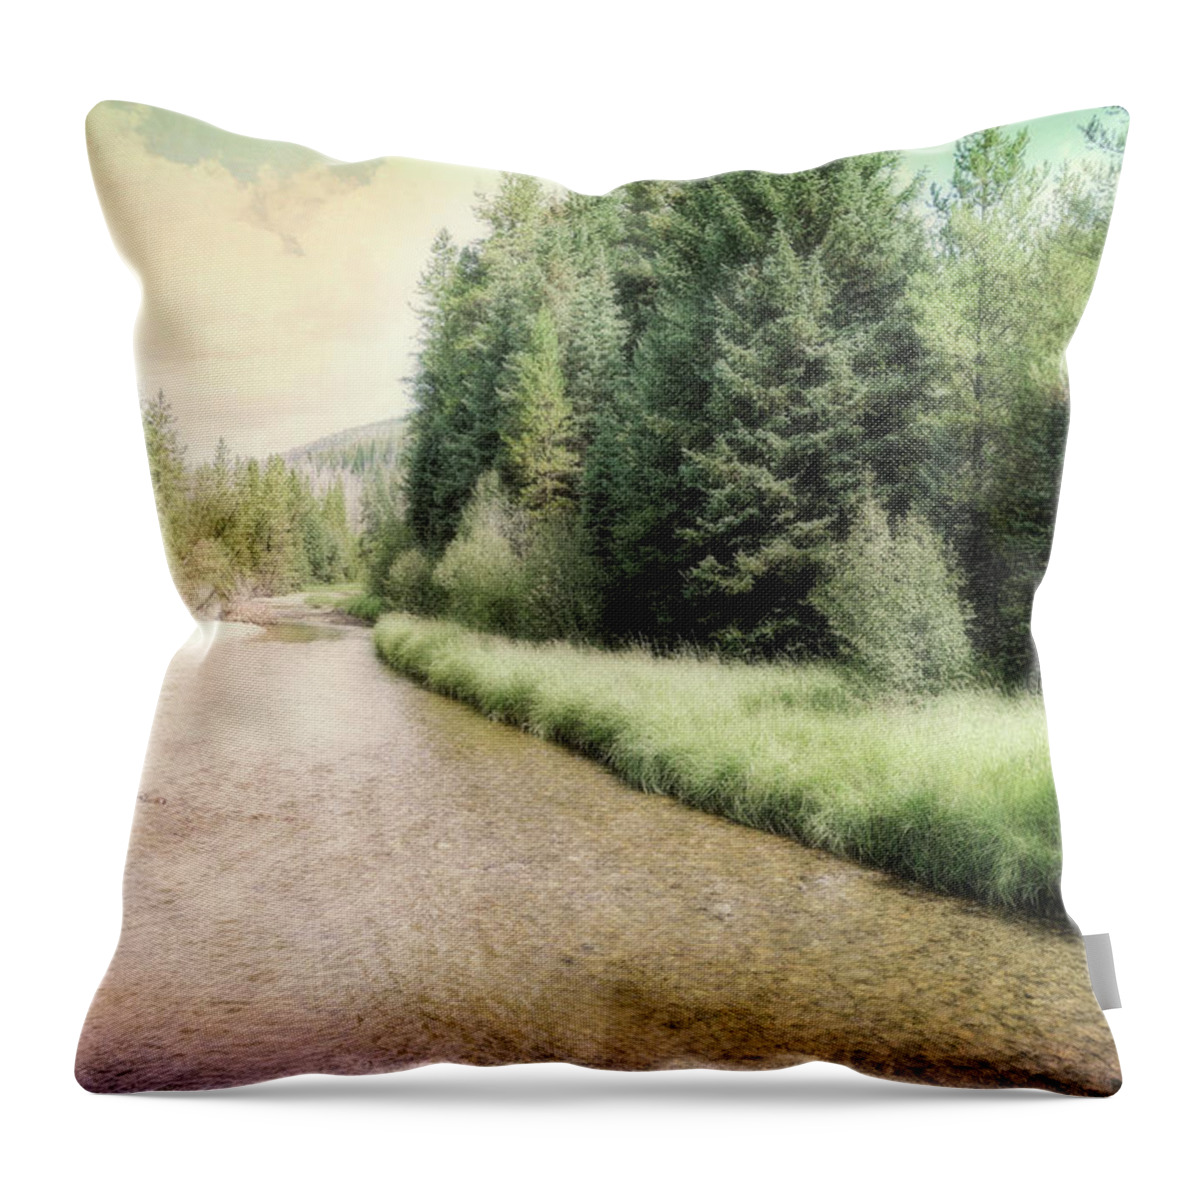 Colorado Throw Pillow featuring the photograph Colorado River photograph by Ann Powell